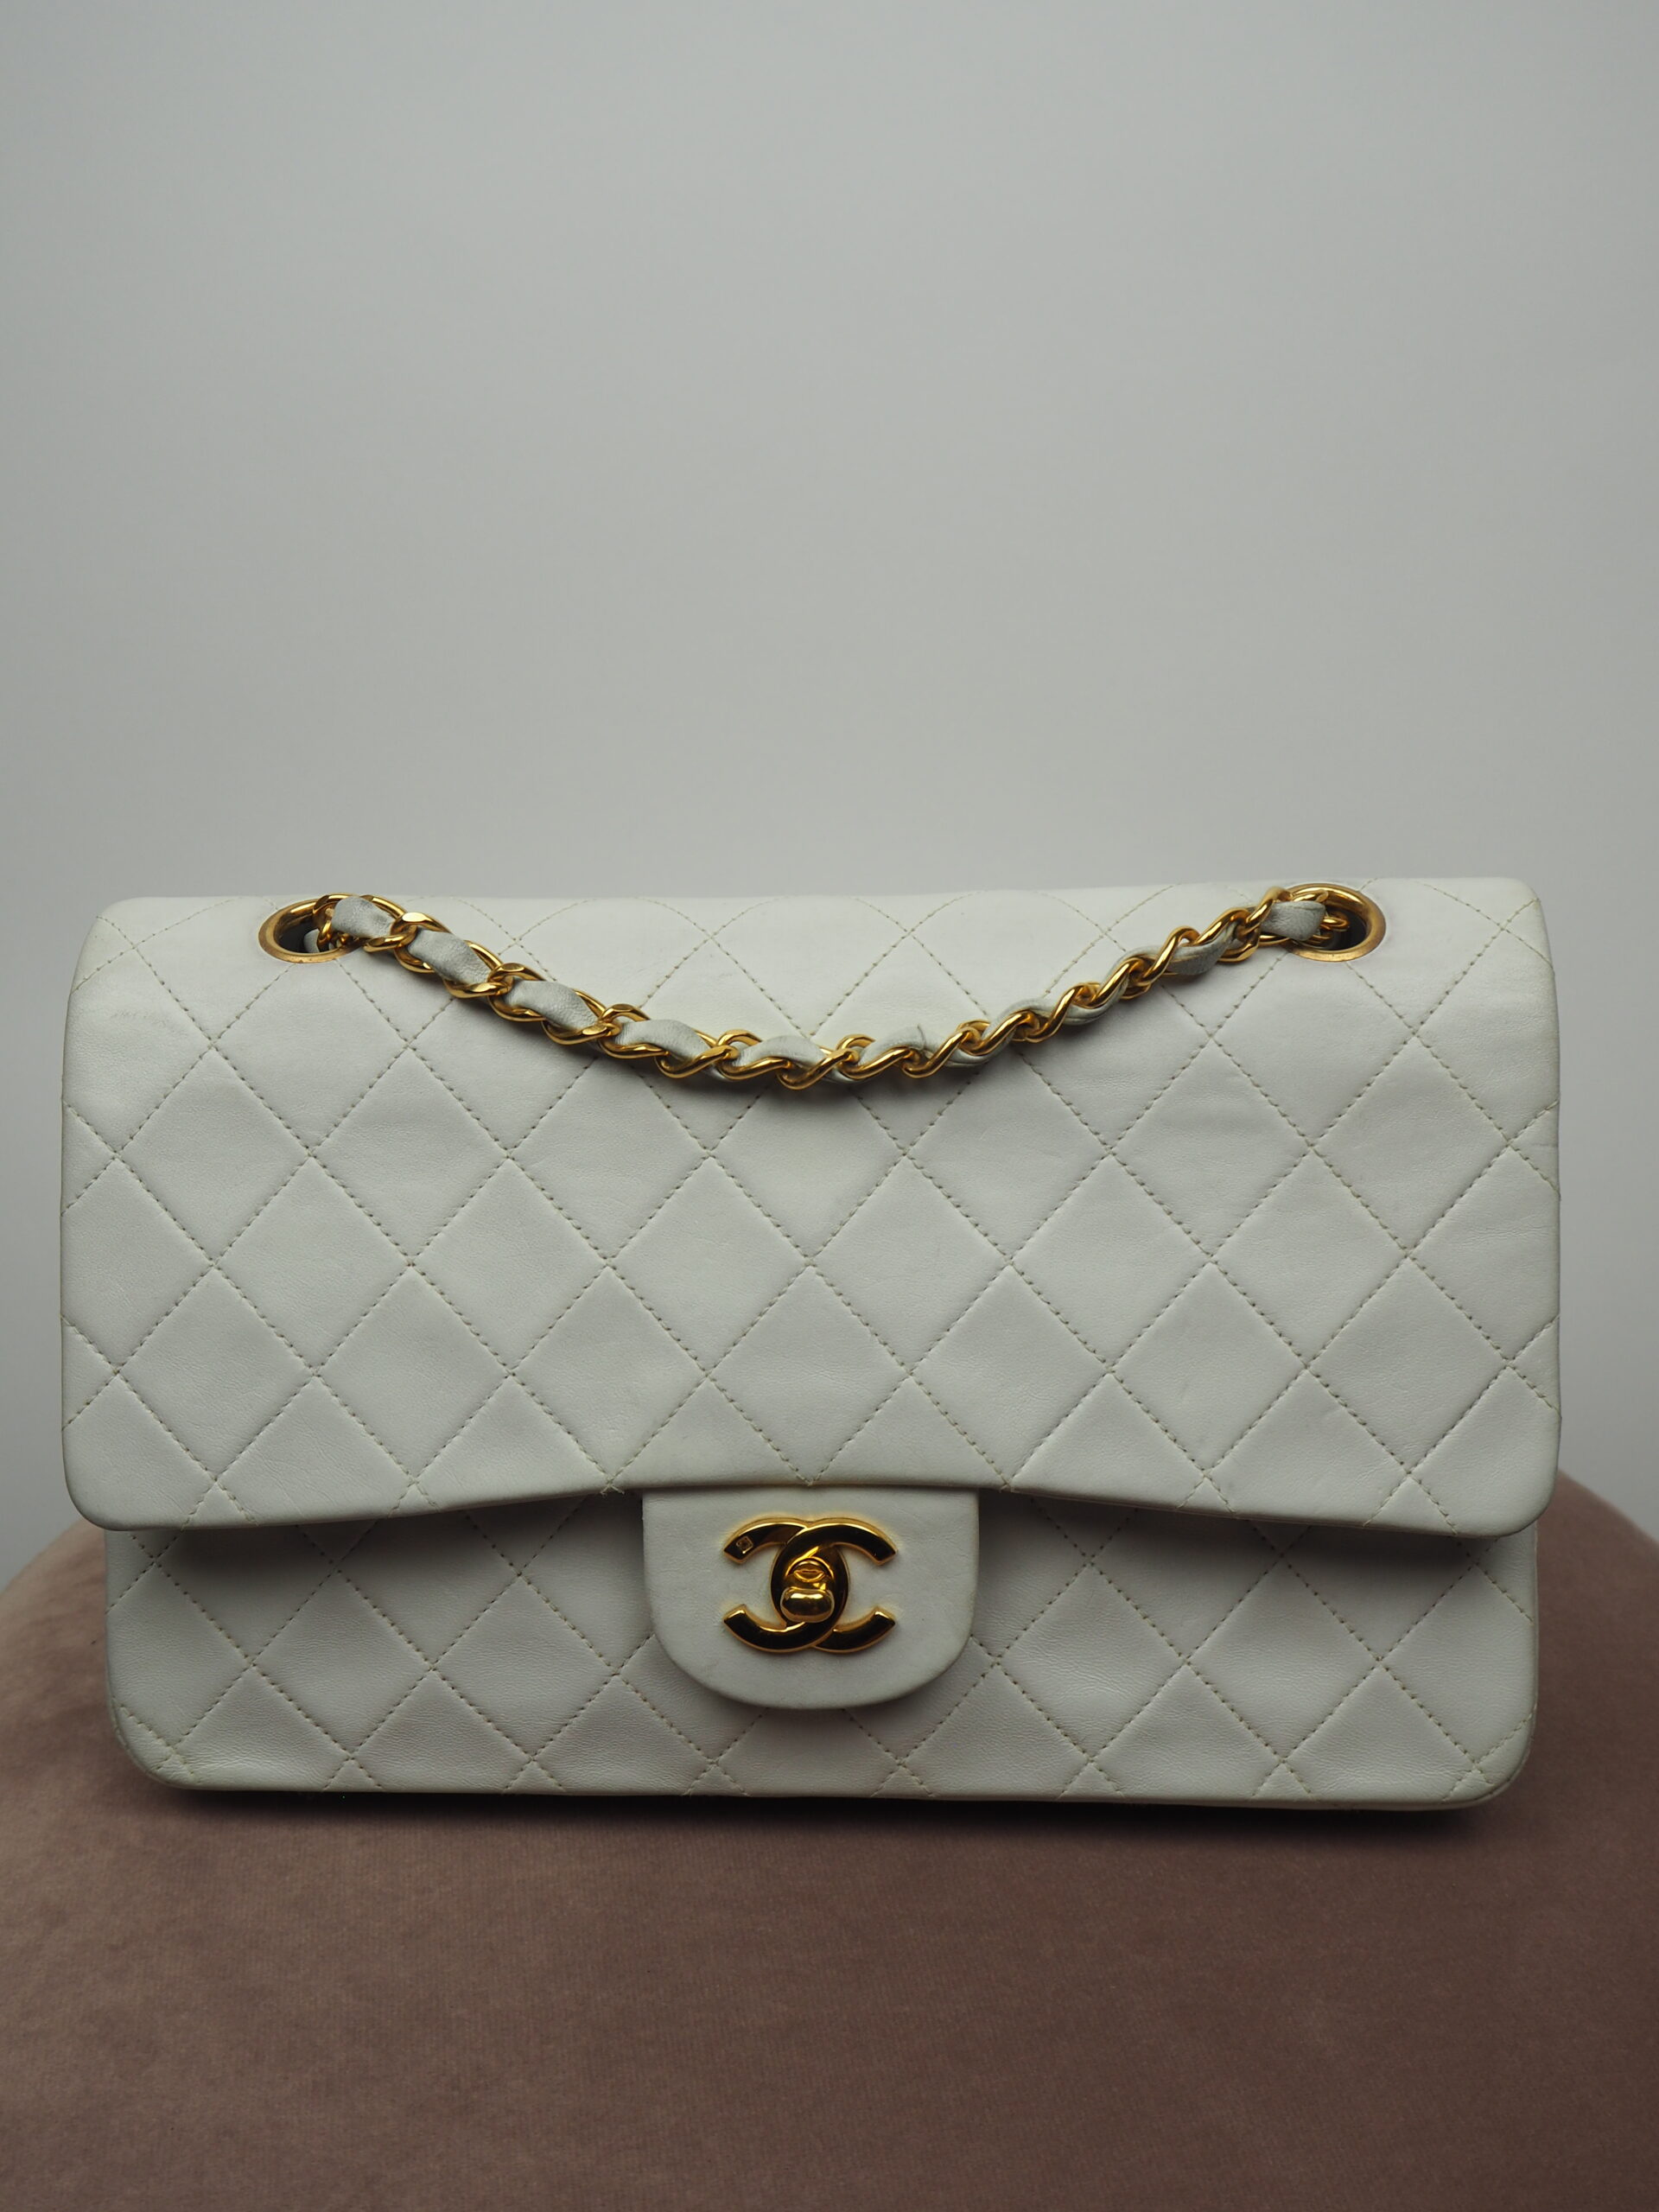 Chanel Handbag Lady Handbags Pochette Bag Chain Crossbody Bags Fashion  Small Shoulder Ba G Purse Multi Color Straps From Handbag1899, $5.03 |  DHgate.Com